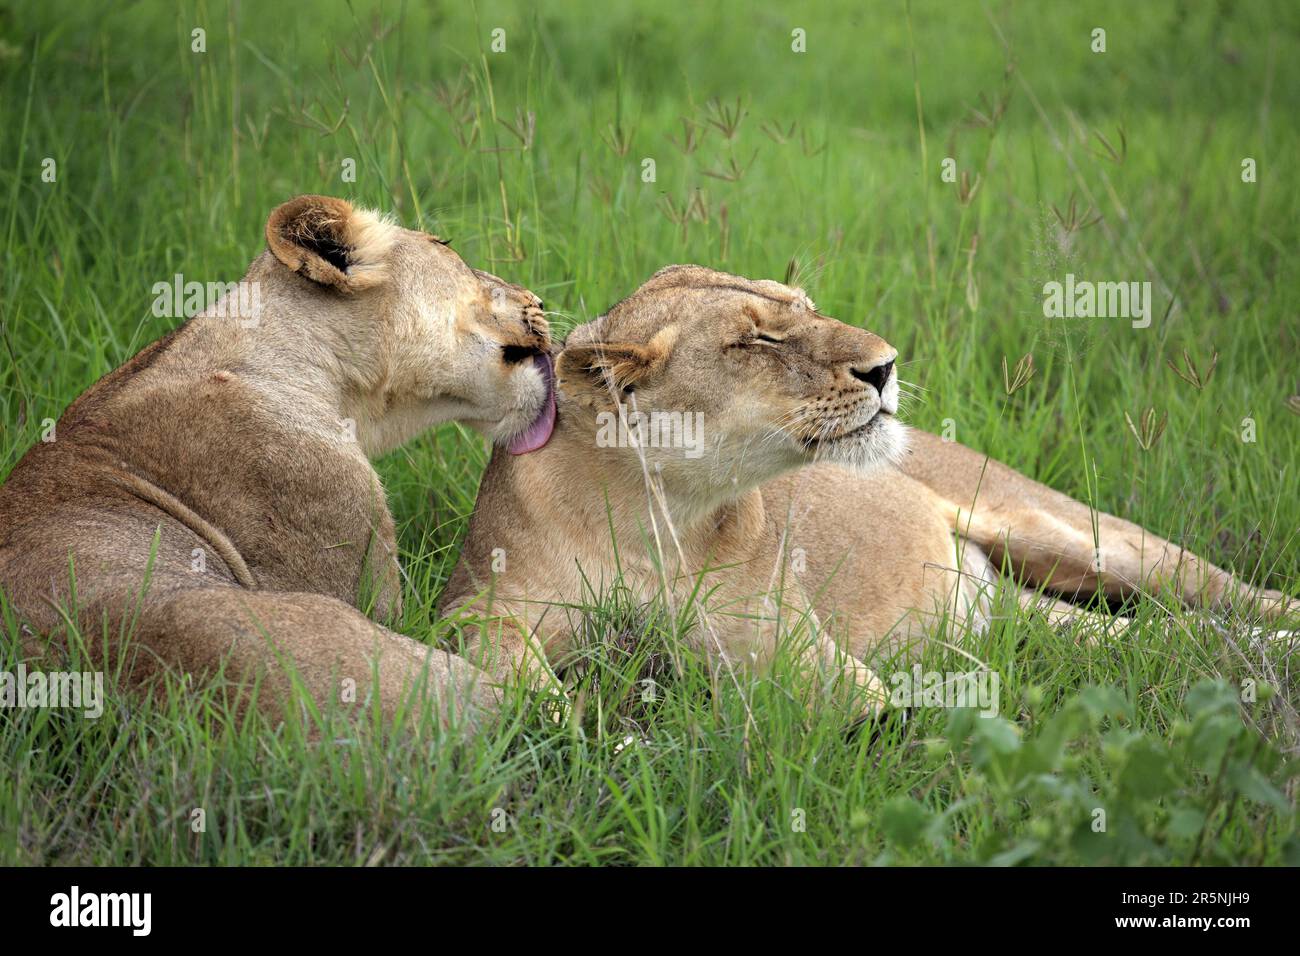 Lions d'Afrique (Panthera leo), lionnes, réserve de gibier Sabi Sabi, parc national Kruger, lion de nian d'Afrique du Sud Banque D'Images